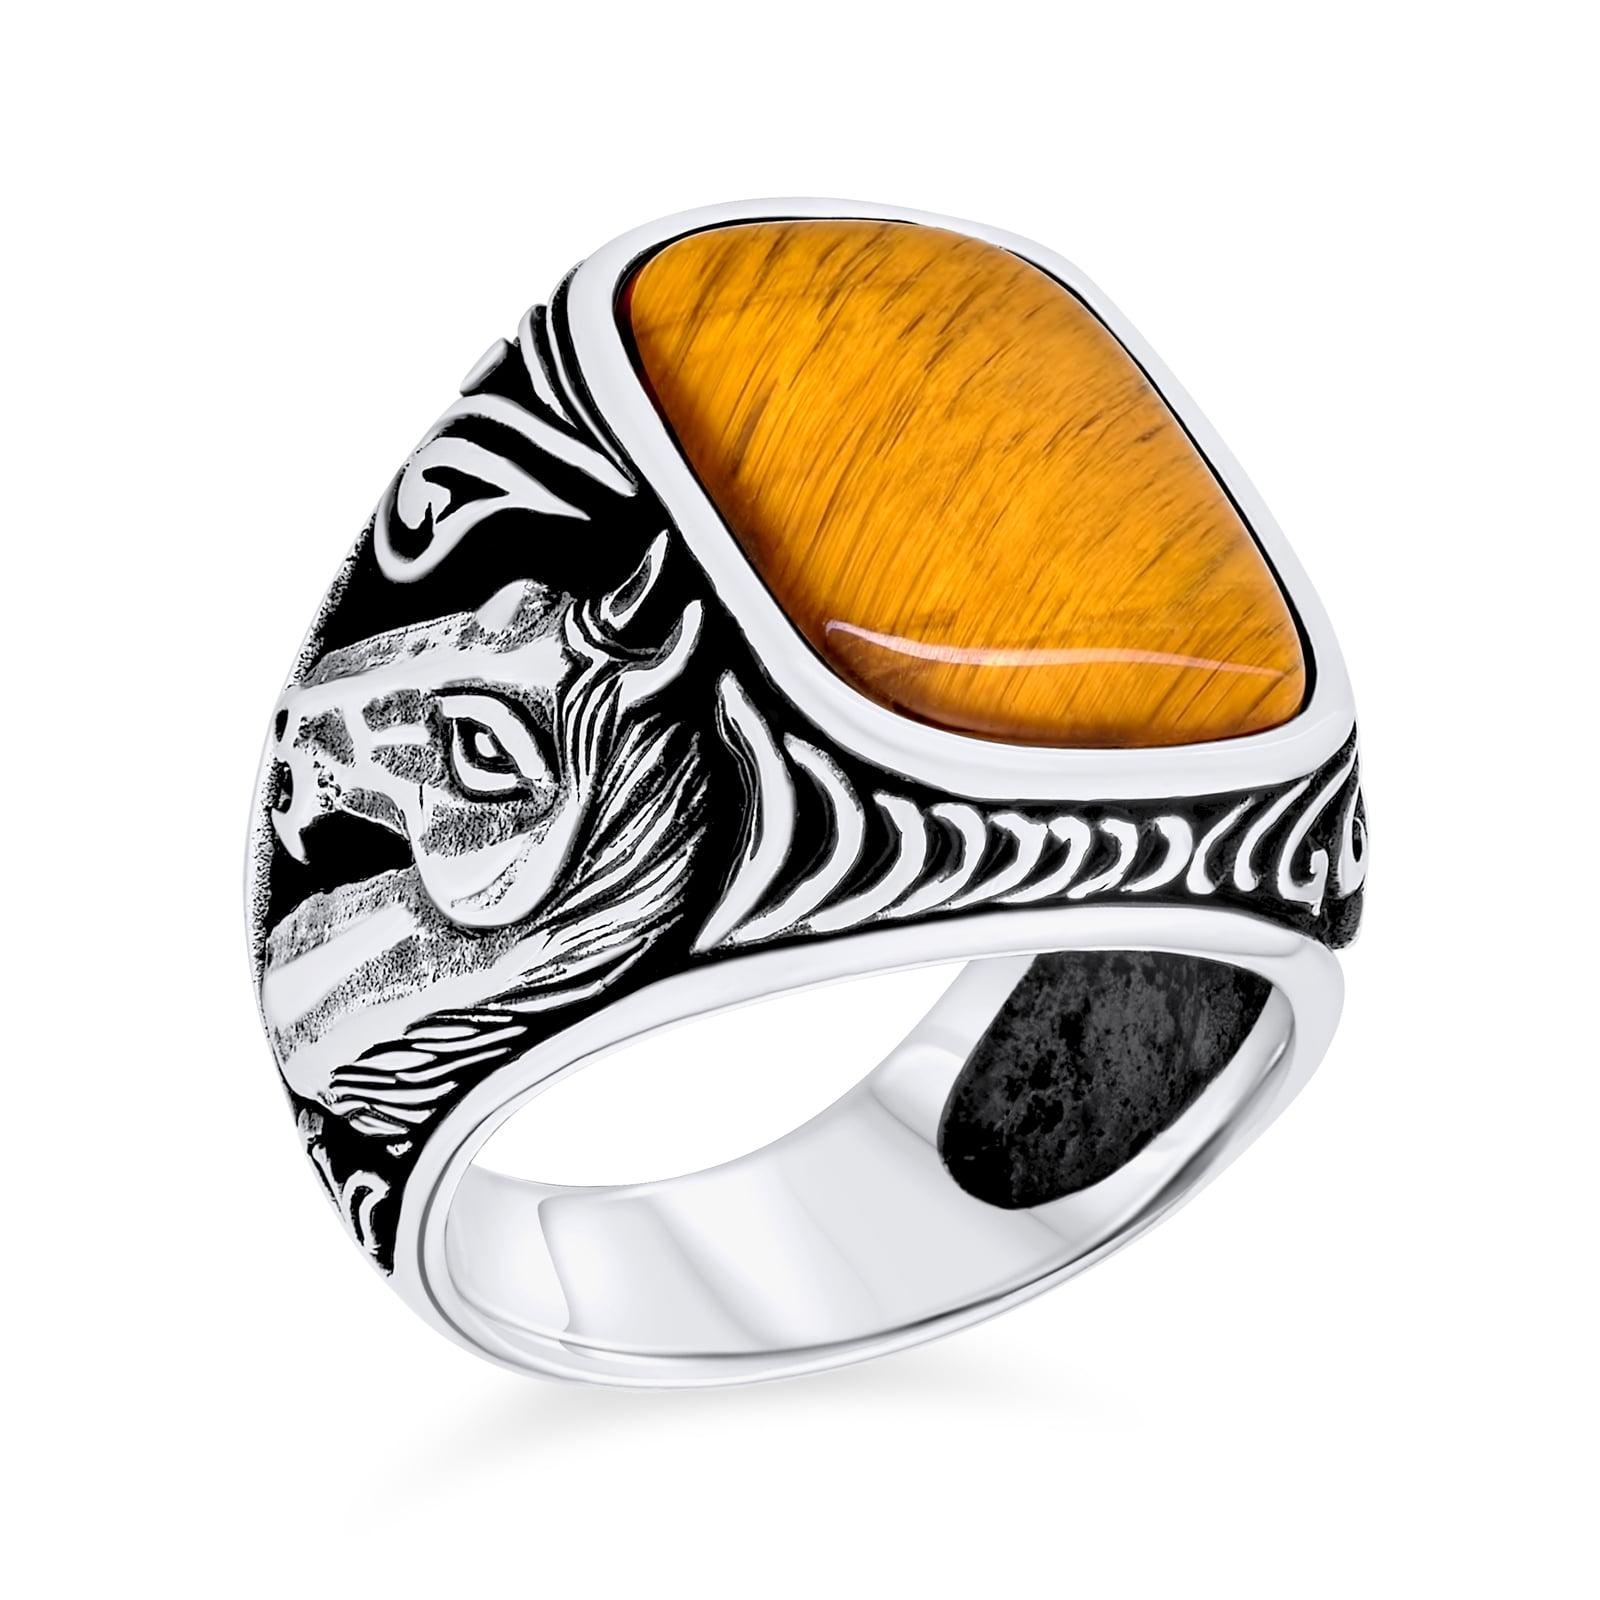 Tiger Eye Ring for Women tori Engagement Ring Tigers Eye Ring Flower Ring  Twig Ring Branch Ring Oak Ring Tiger Eye Jewelry - Etsy